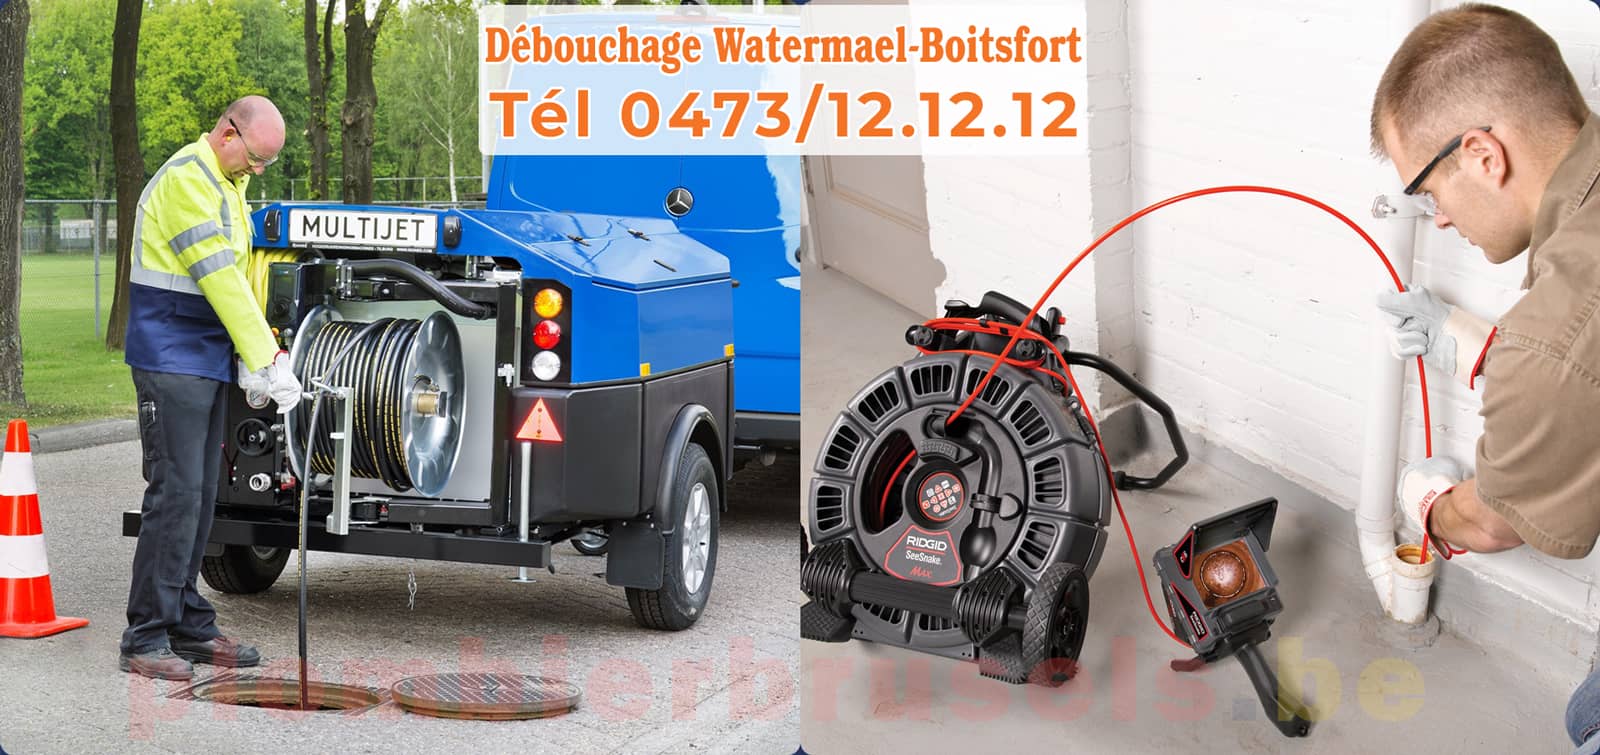 Plombier Brussels service de Débouchage Watermael-Boitsfort d'égout tél 0473/12.12.12